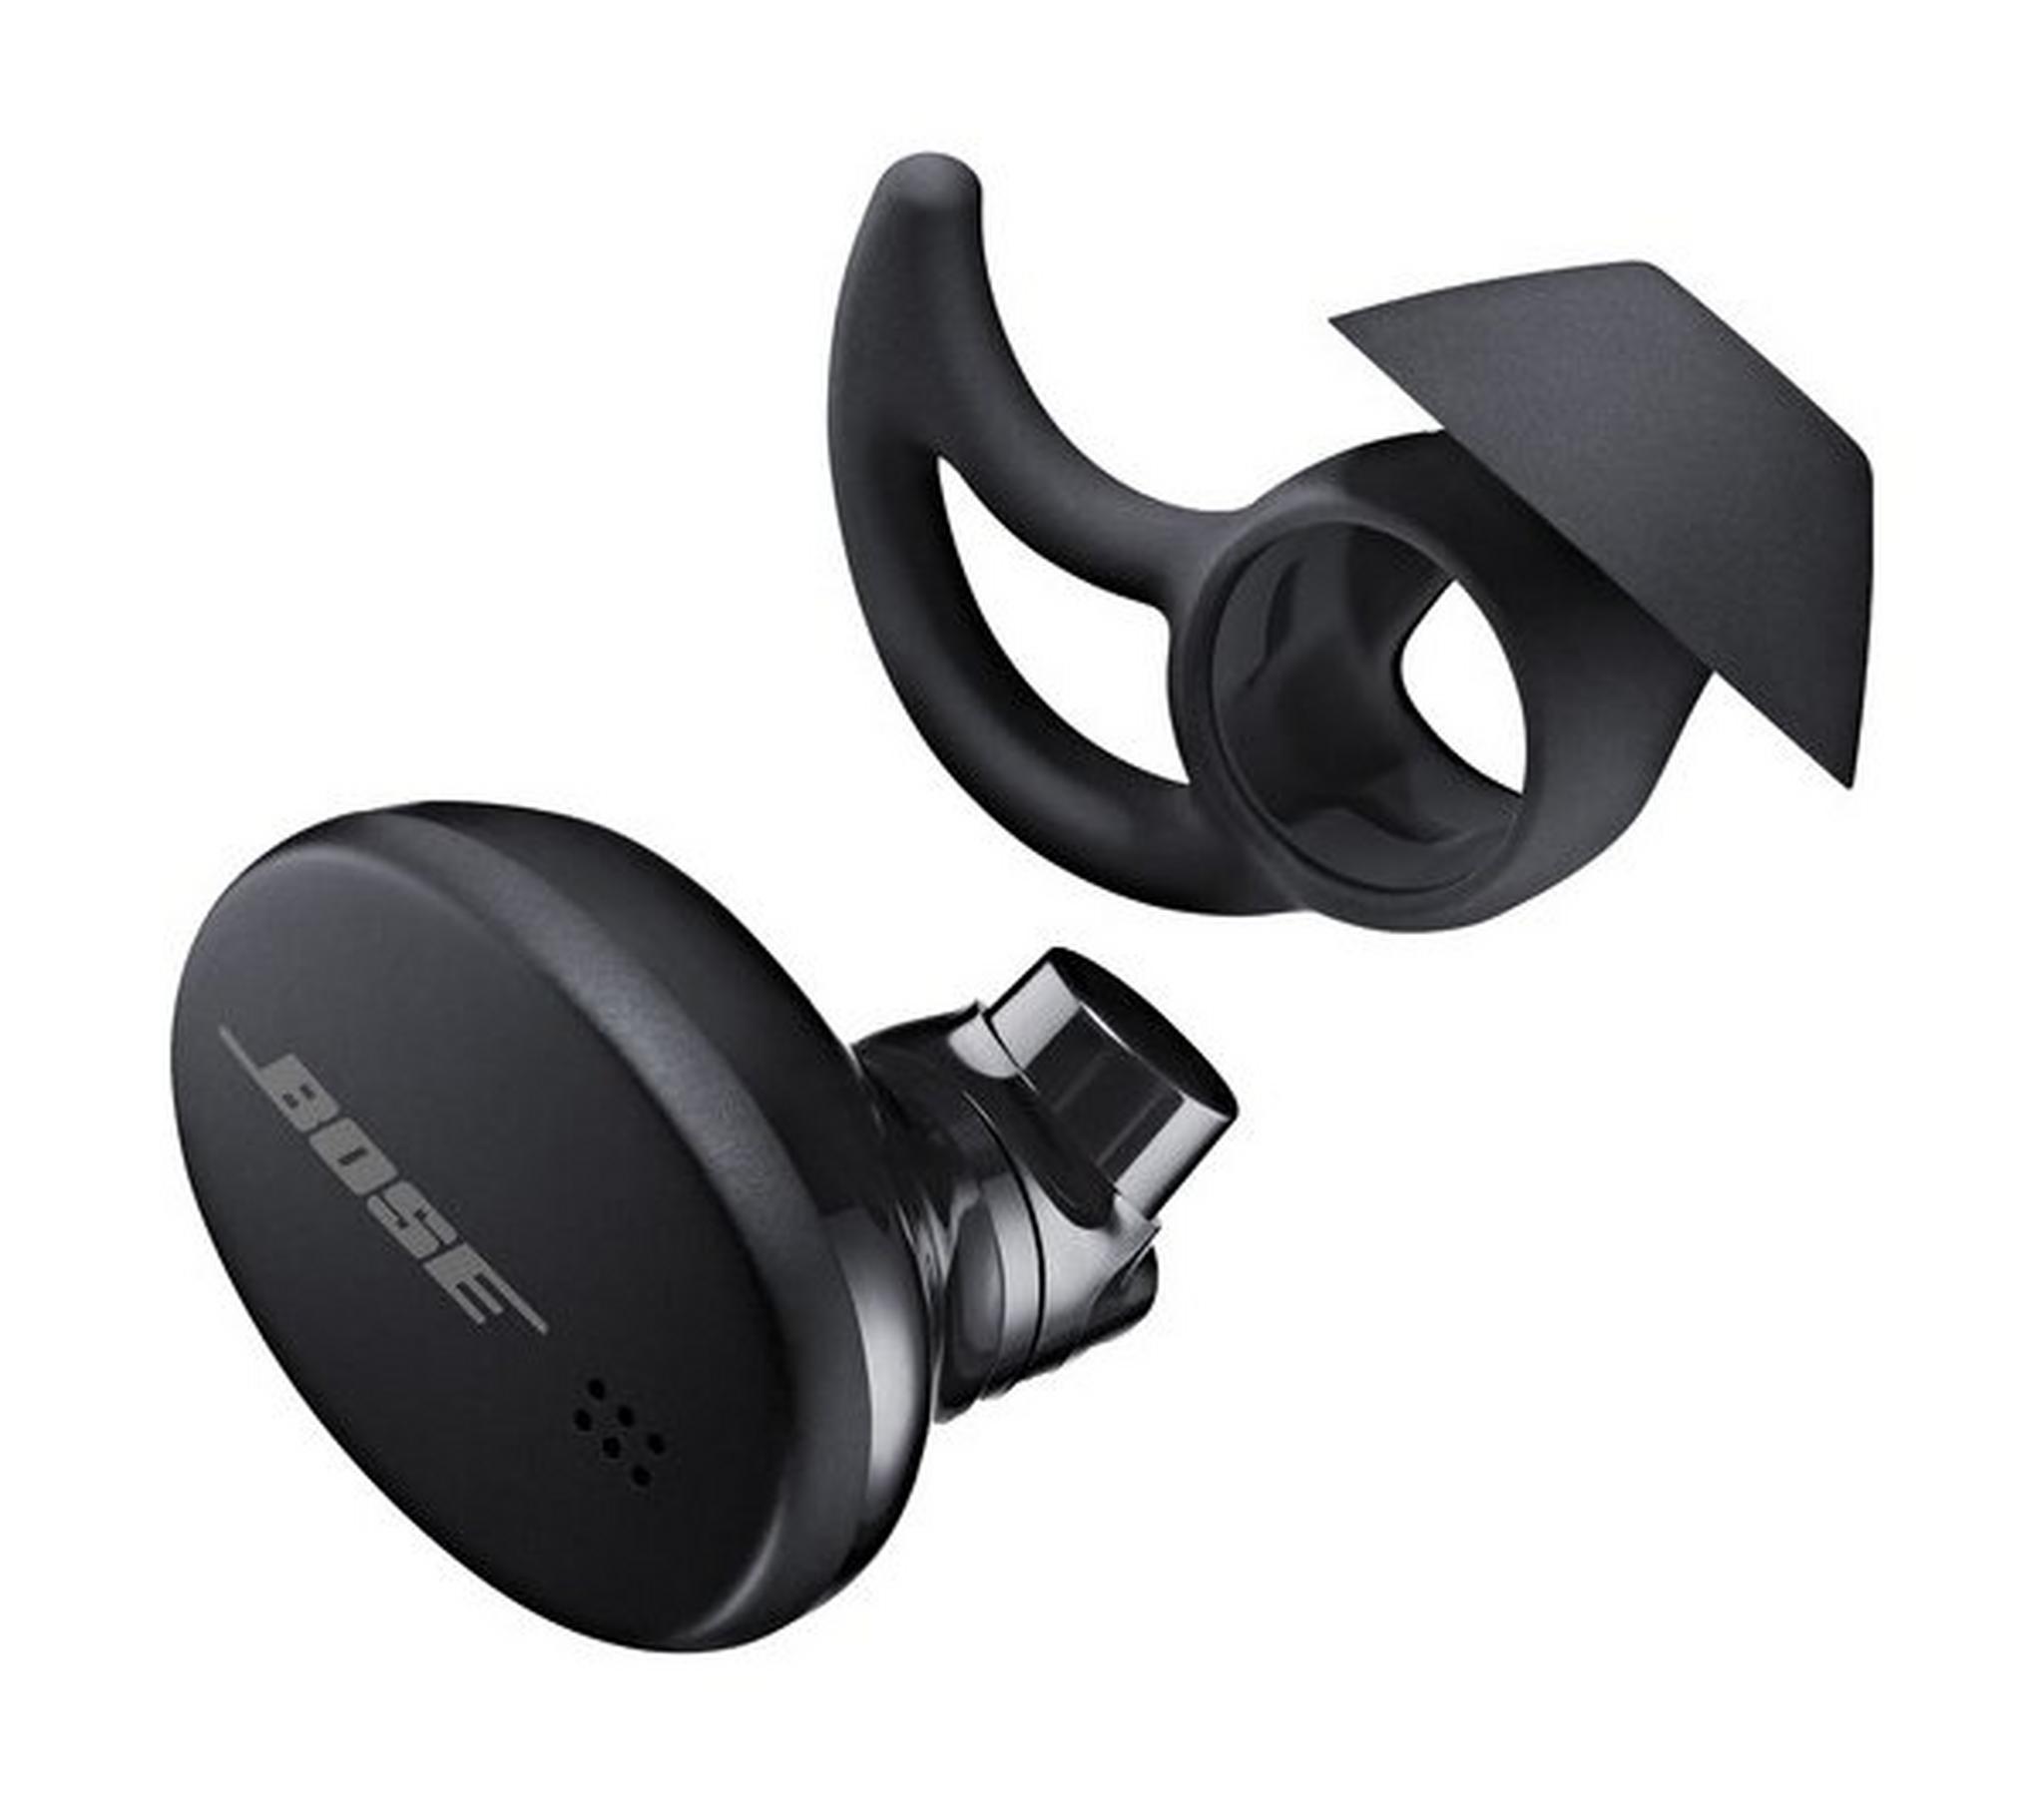 Bose Sport Wireless Earbuds - Triple Black